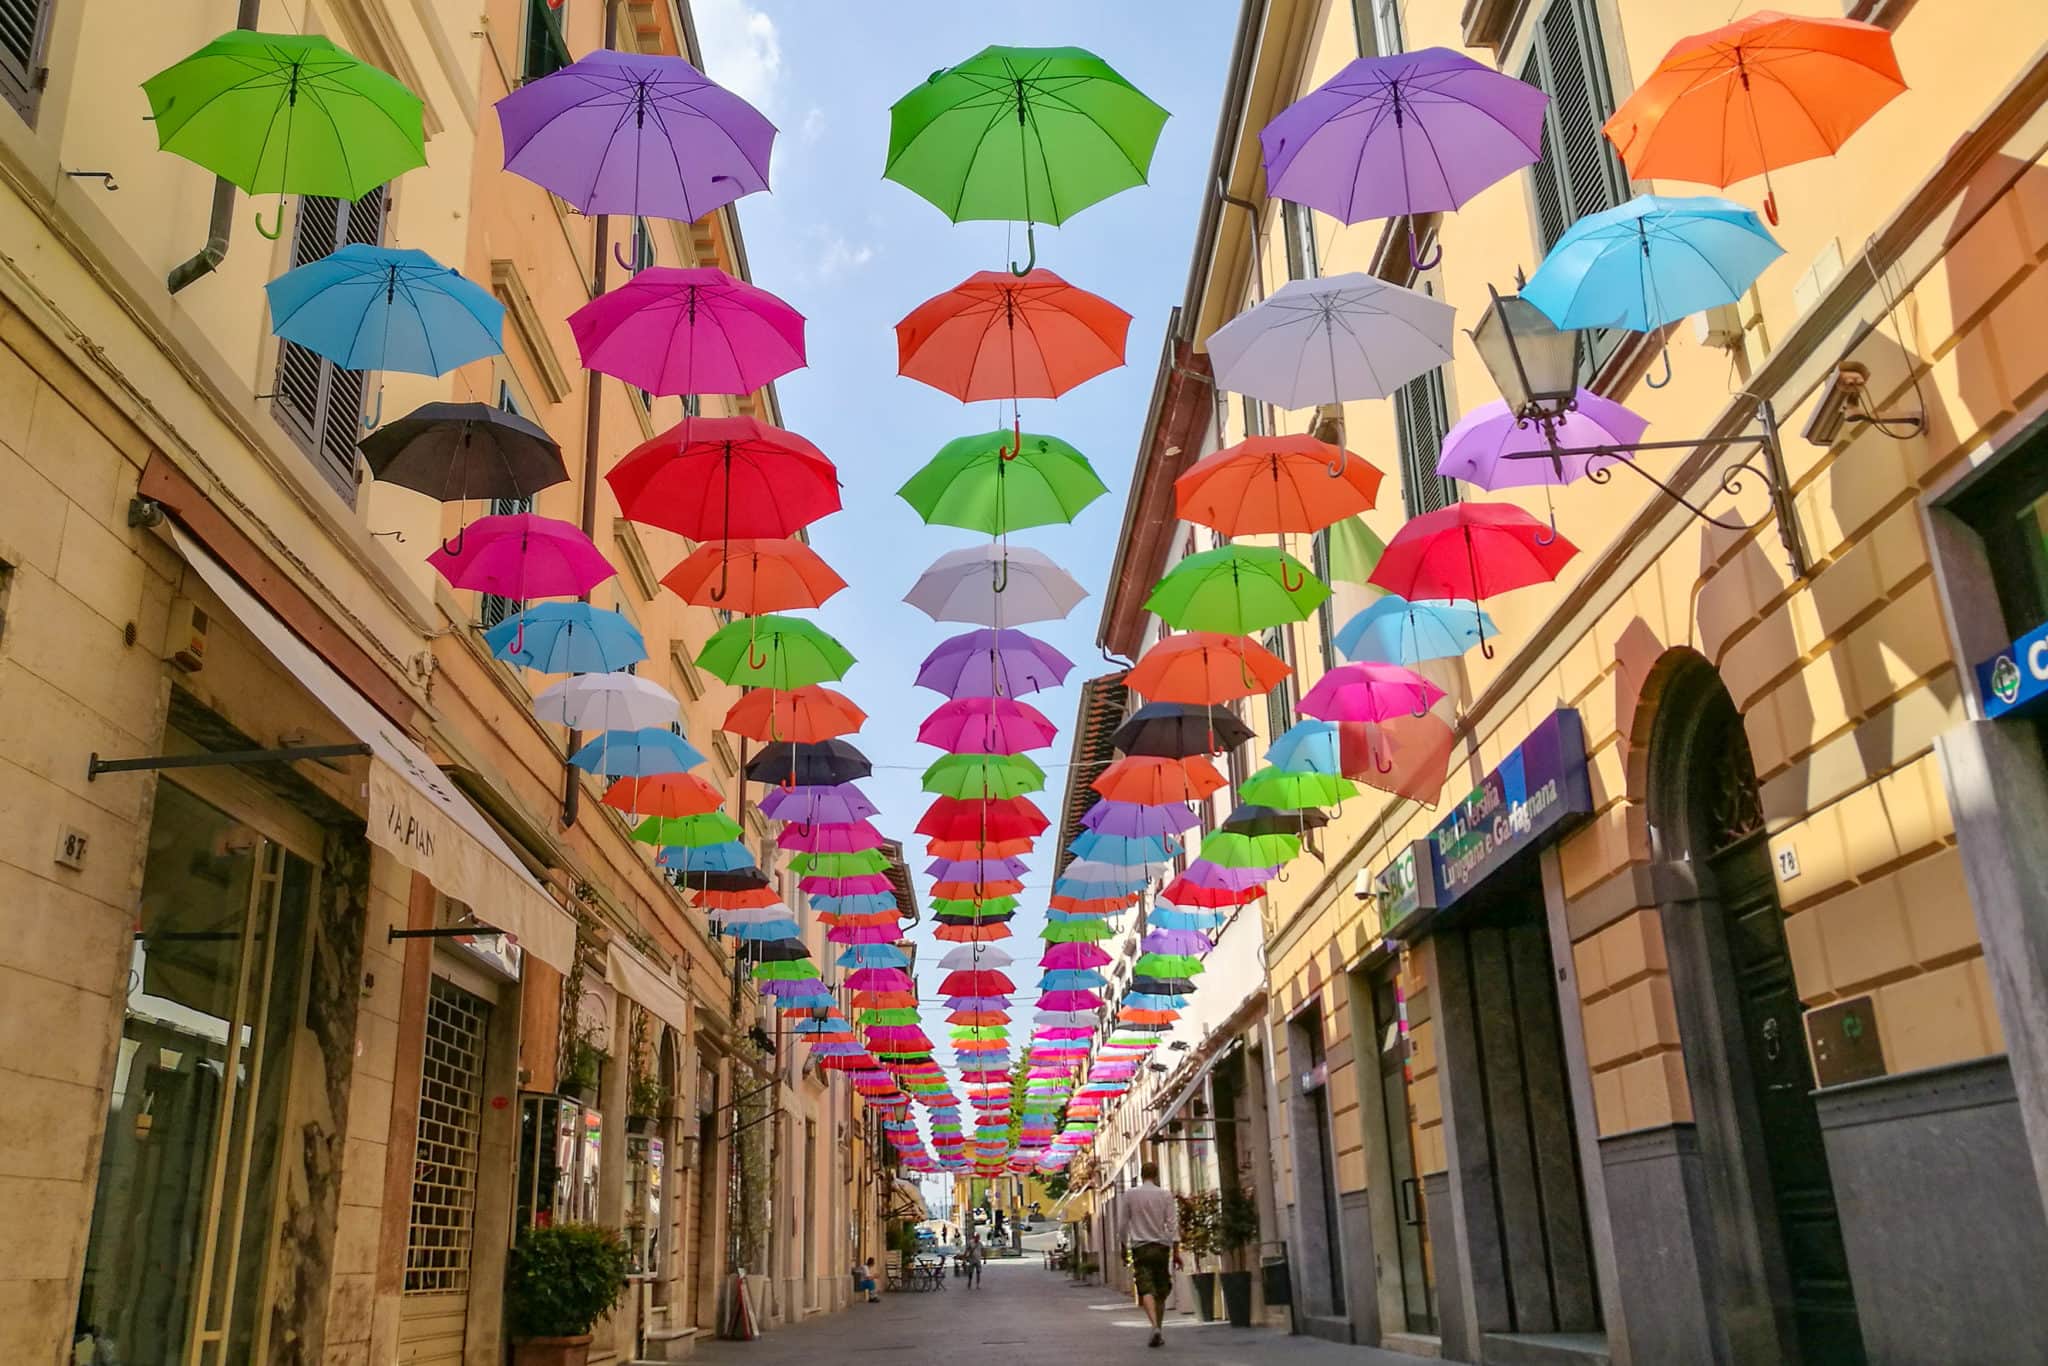 a person walking in Via Mazzini under the floating umbrellas in Pietrasanta